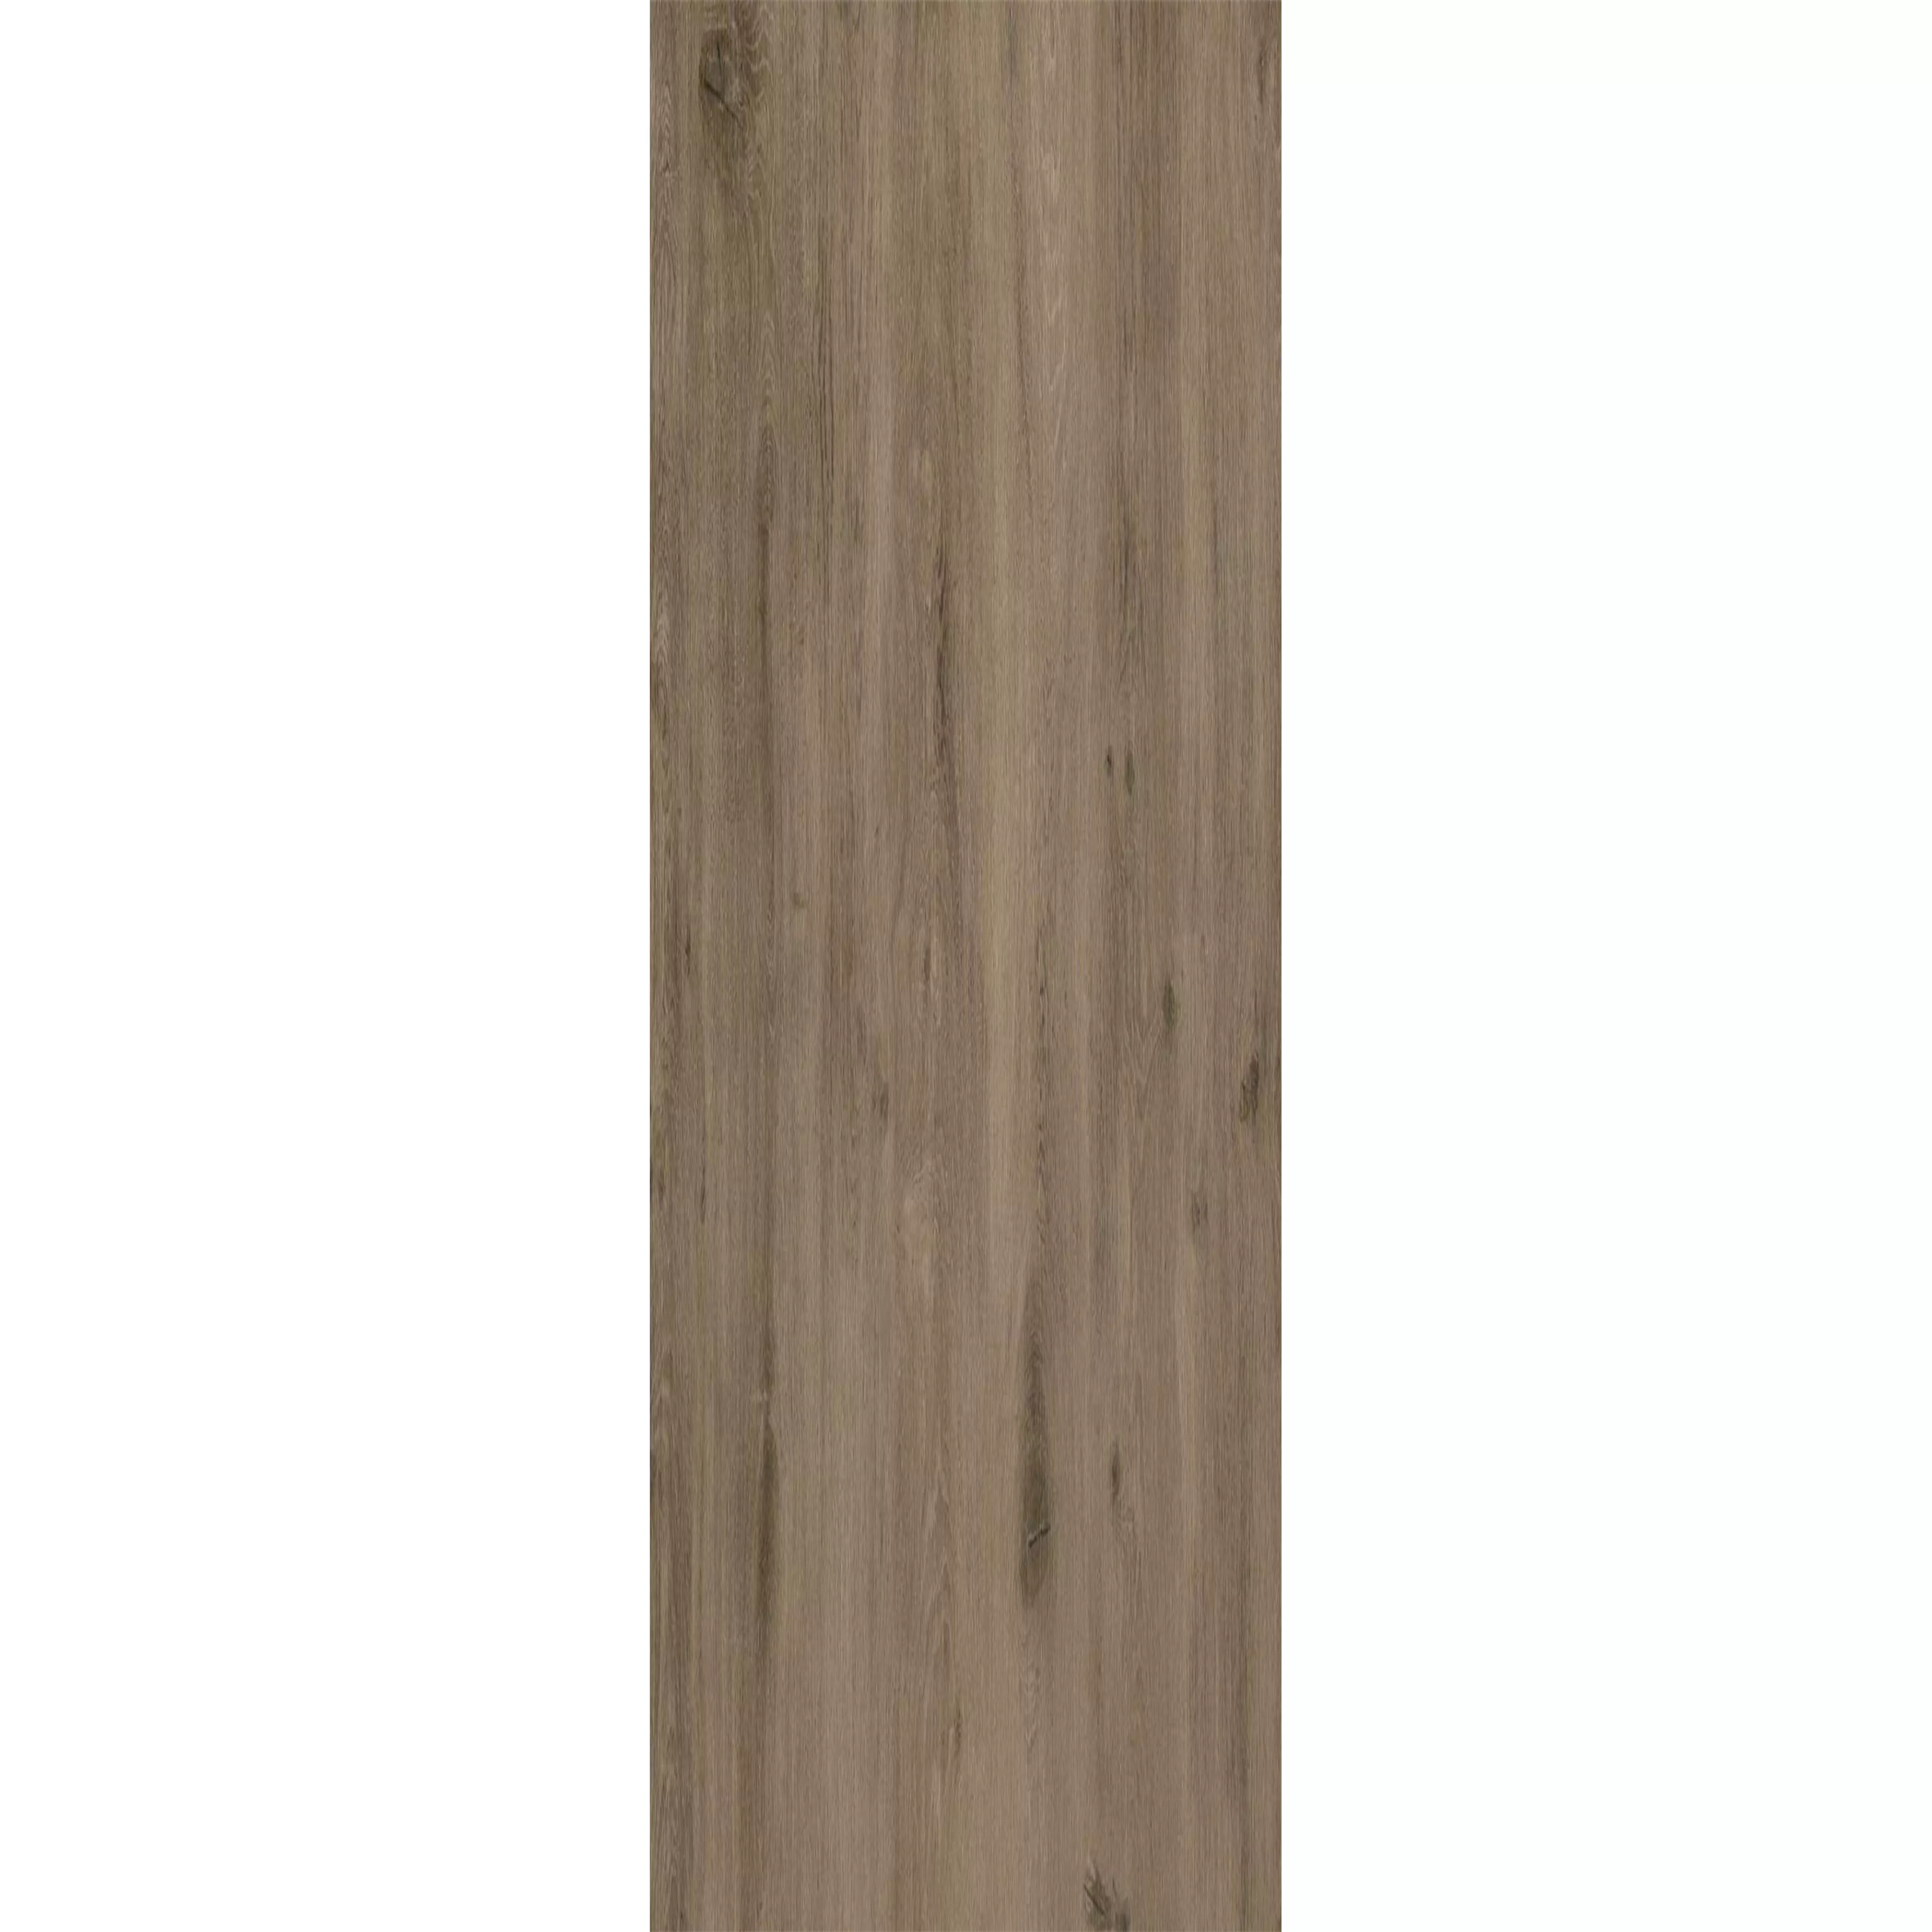 Suelo De Vinilo Sistema De Clic Woodland Marrón Gris 17,2x121cm